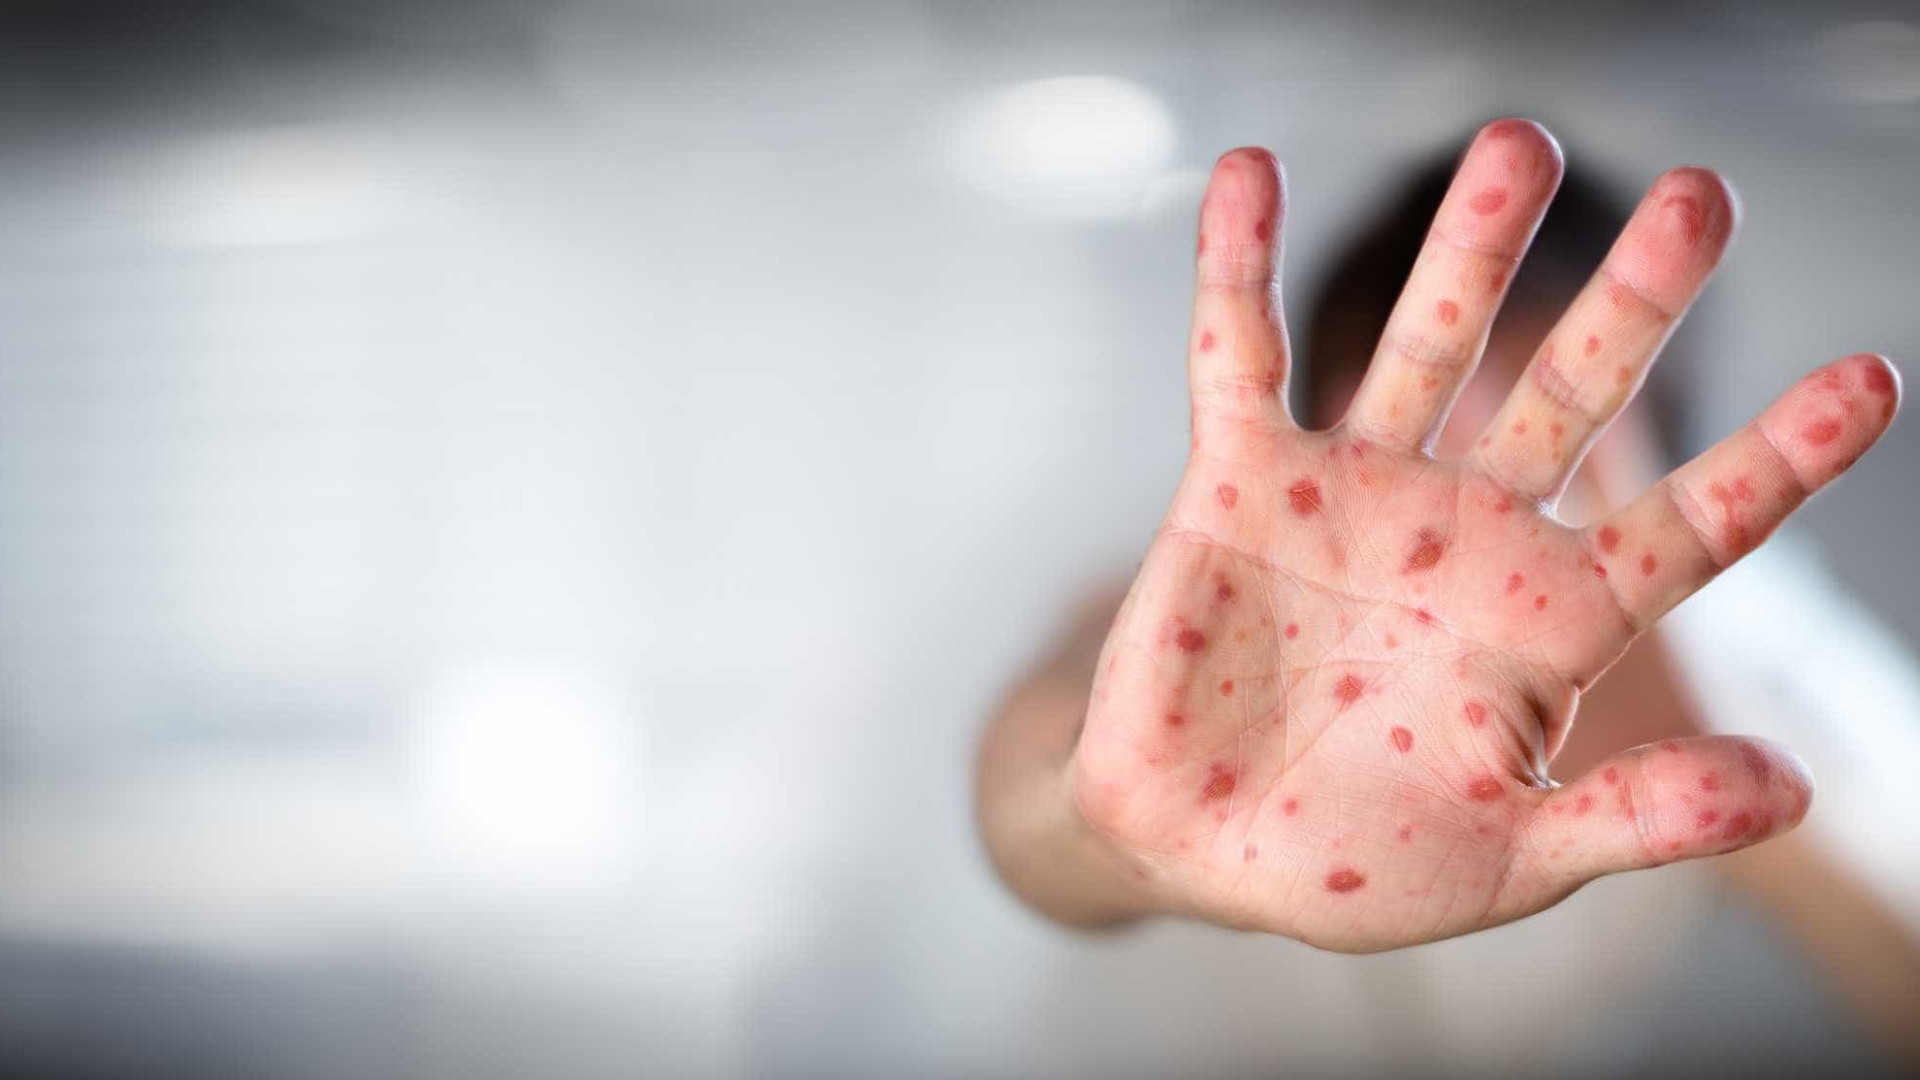 Ministro da Saúde diz que não há risco de sarampo se espalhar pelo país